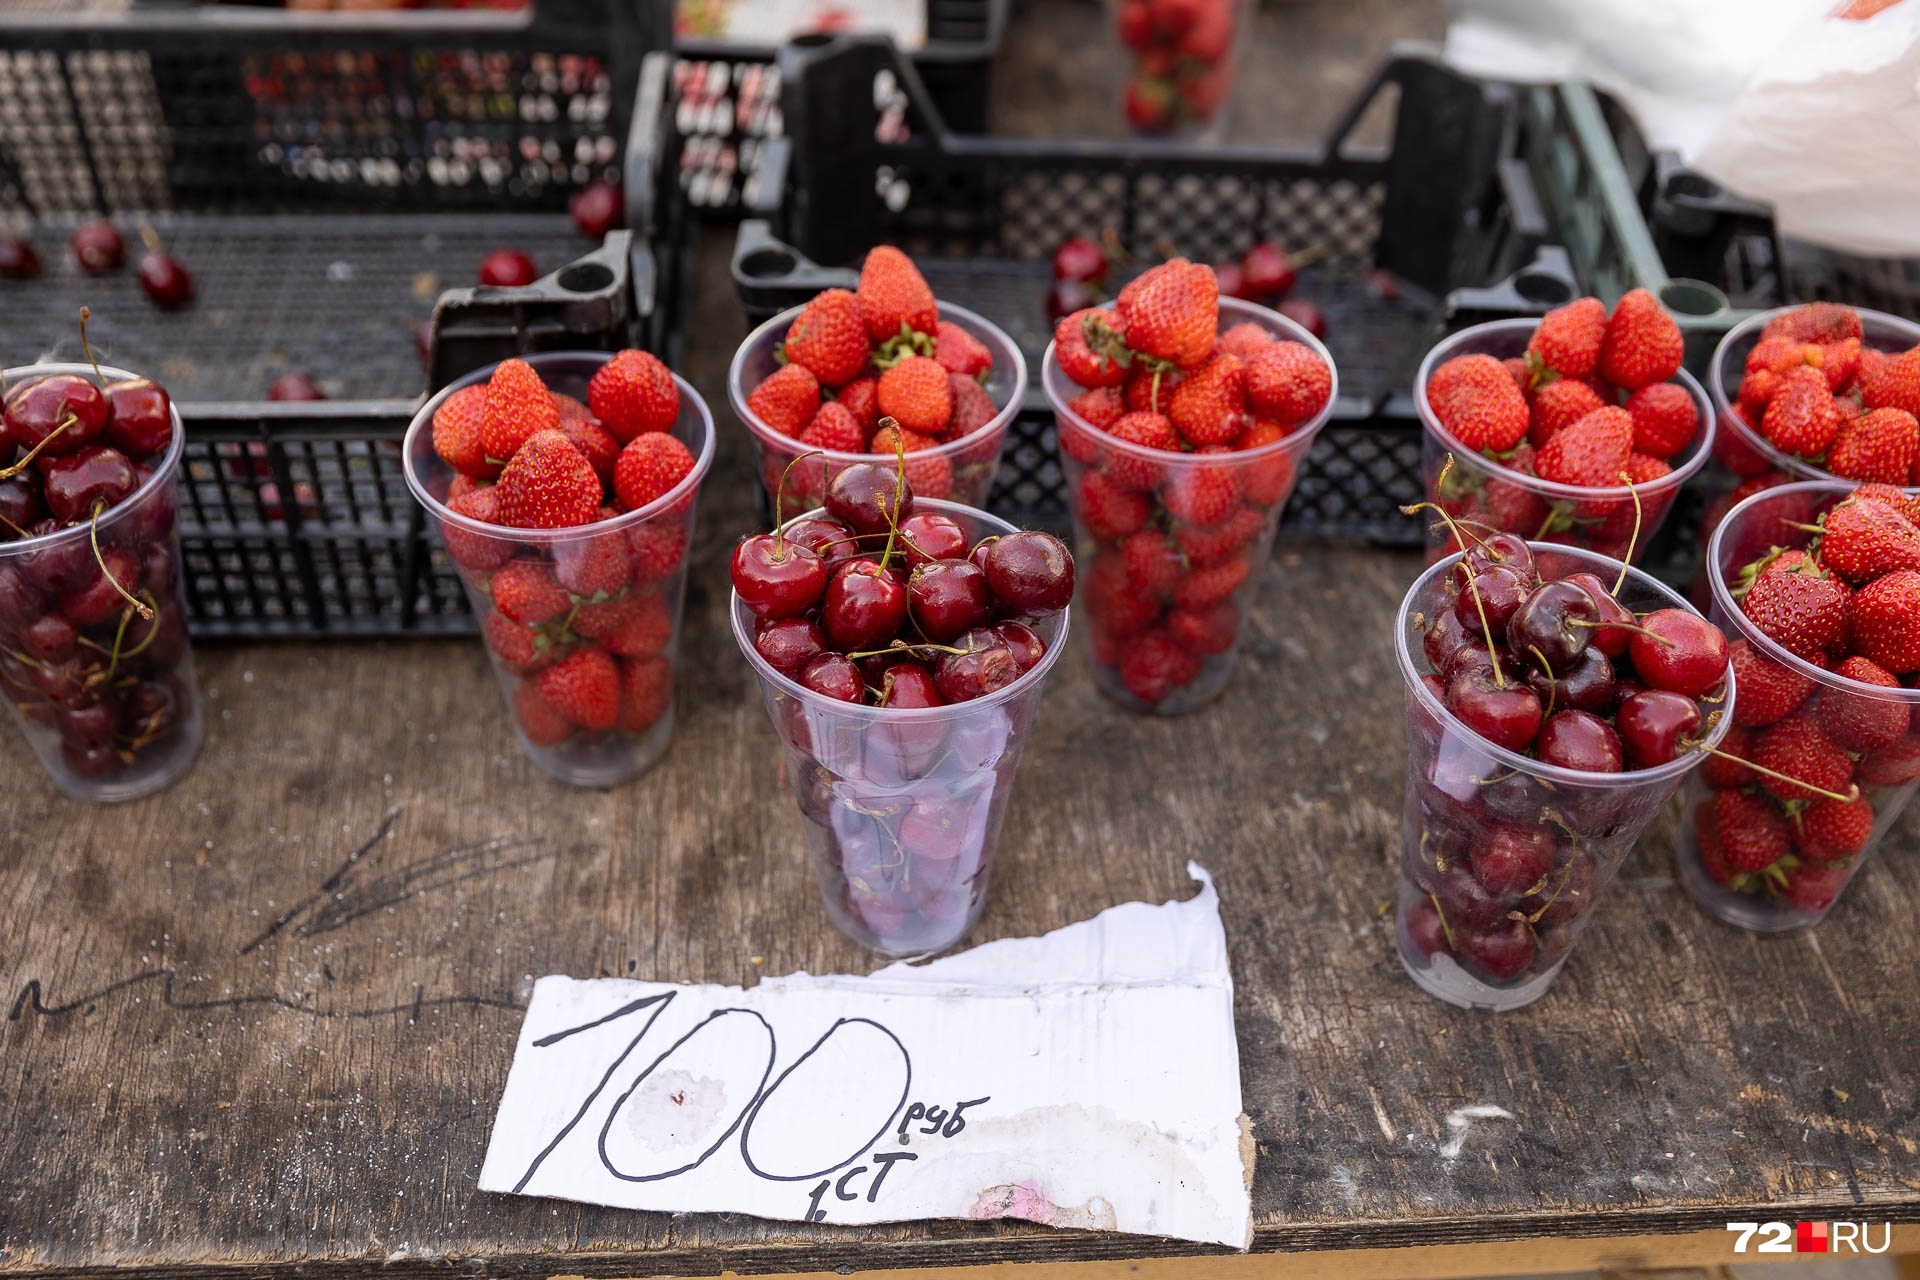 Надо добавить, что стаканчик спелой ягоды можно купить и за 100 рублей